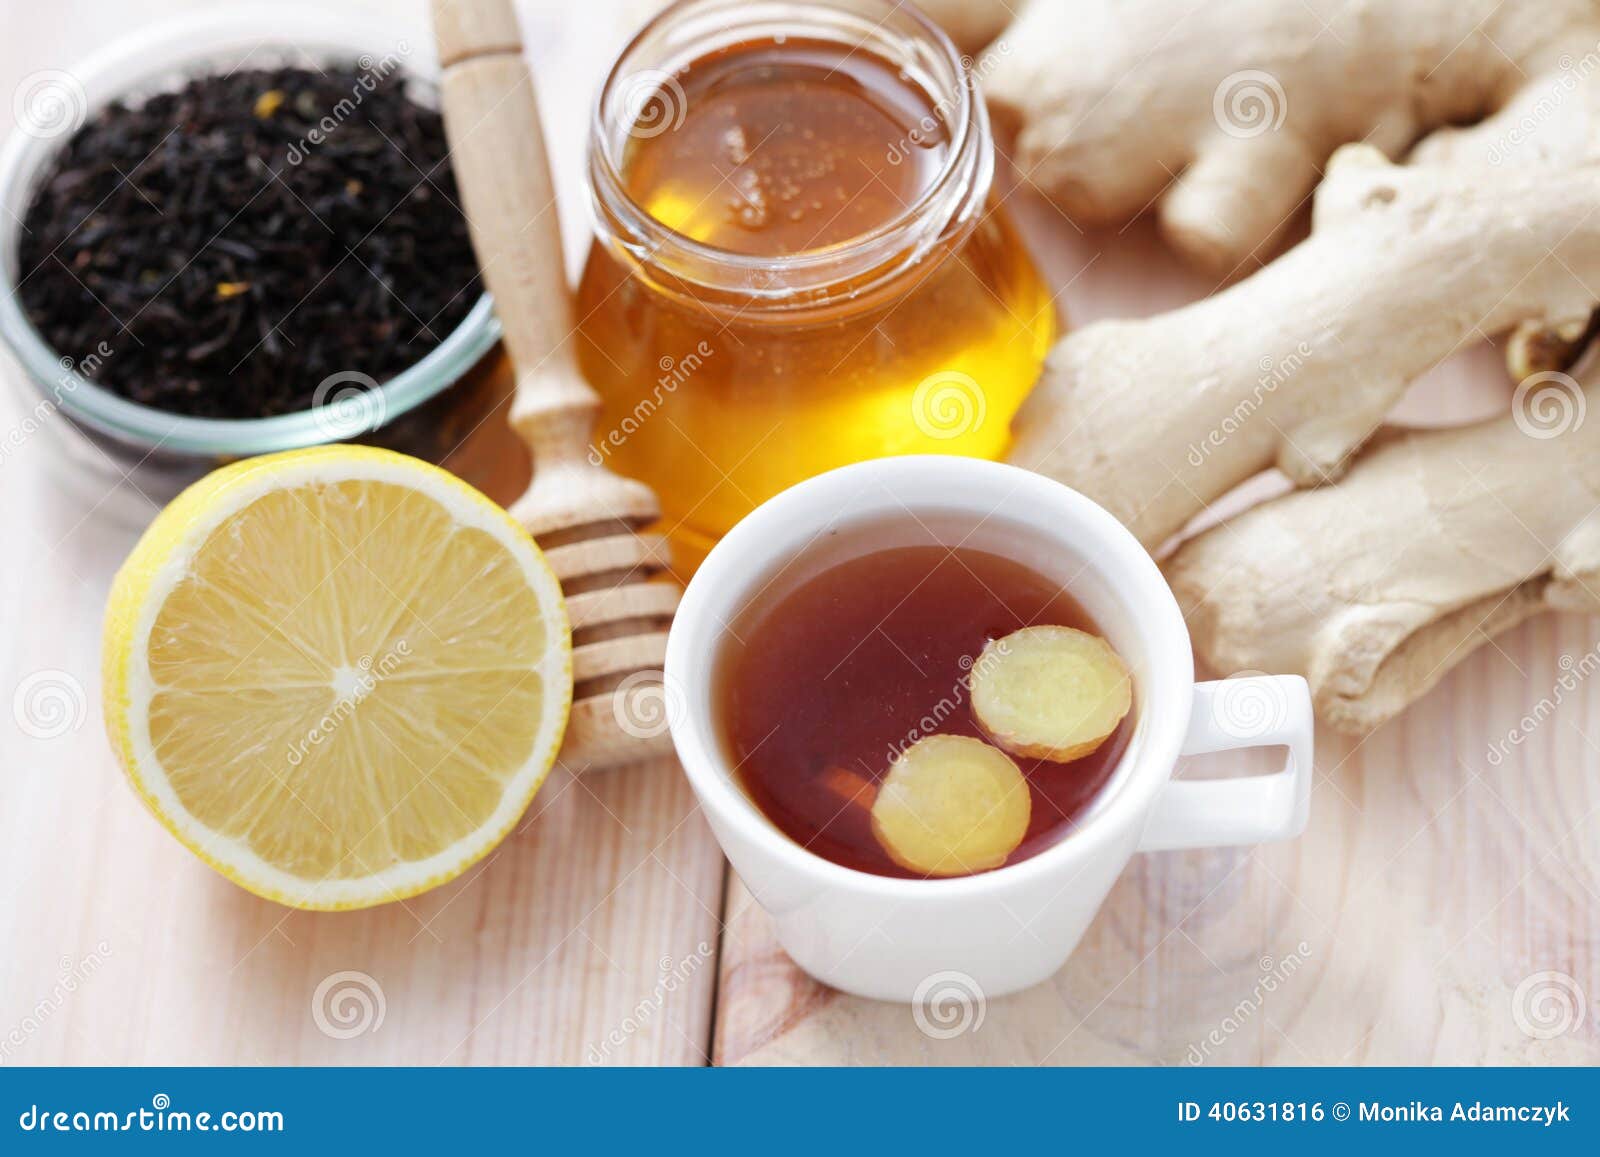 Пейте чай с медом и лимоном. Имбирный чай. Чай с медом. Чай с имбирем. Чай с лимоном и имбирем.